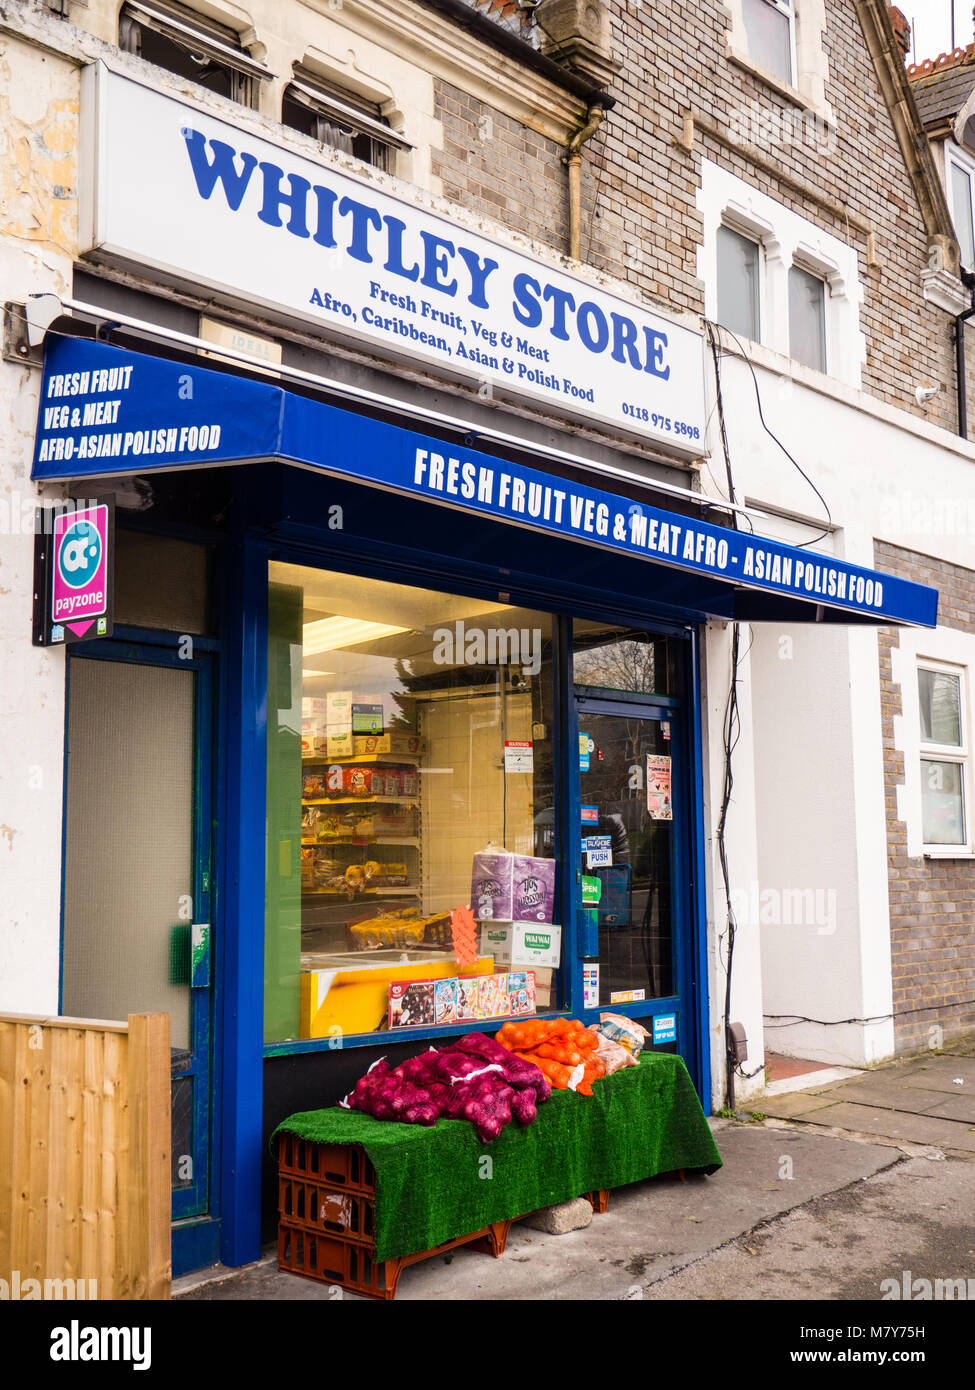 Whitley Store, Verkauf, Afro, karibische, asiatische und polnische Lebensmittel, Whitley Reading, Berkshire, England. Stockfoto